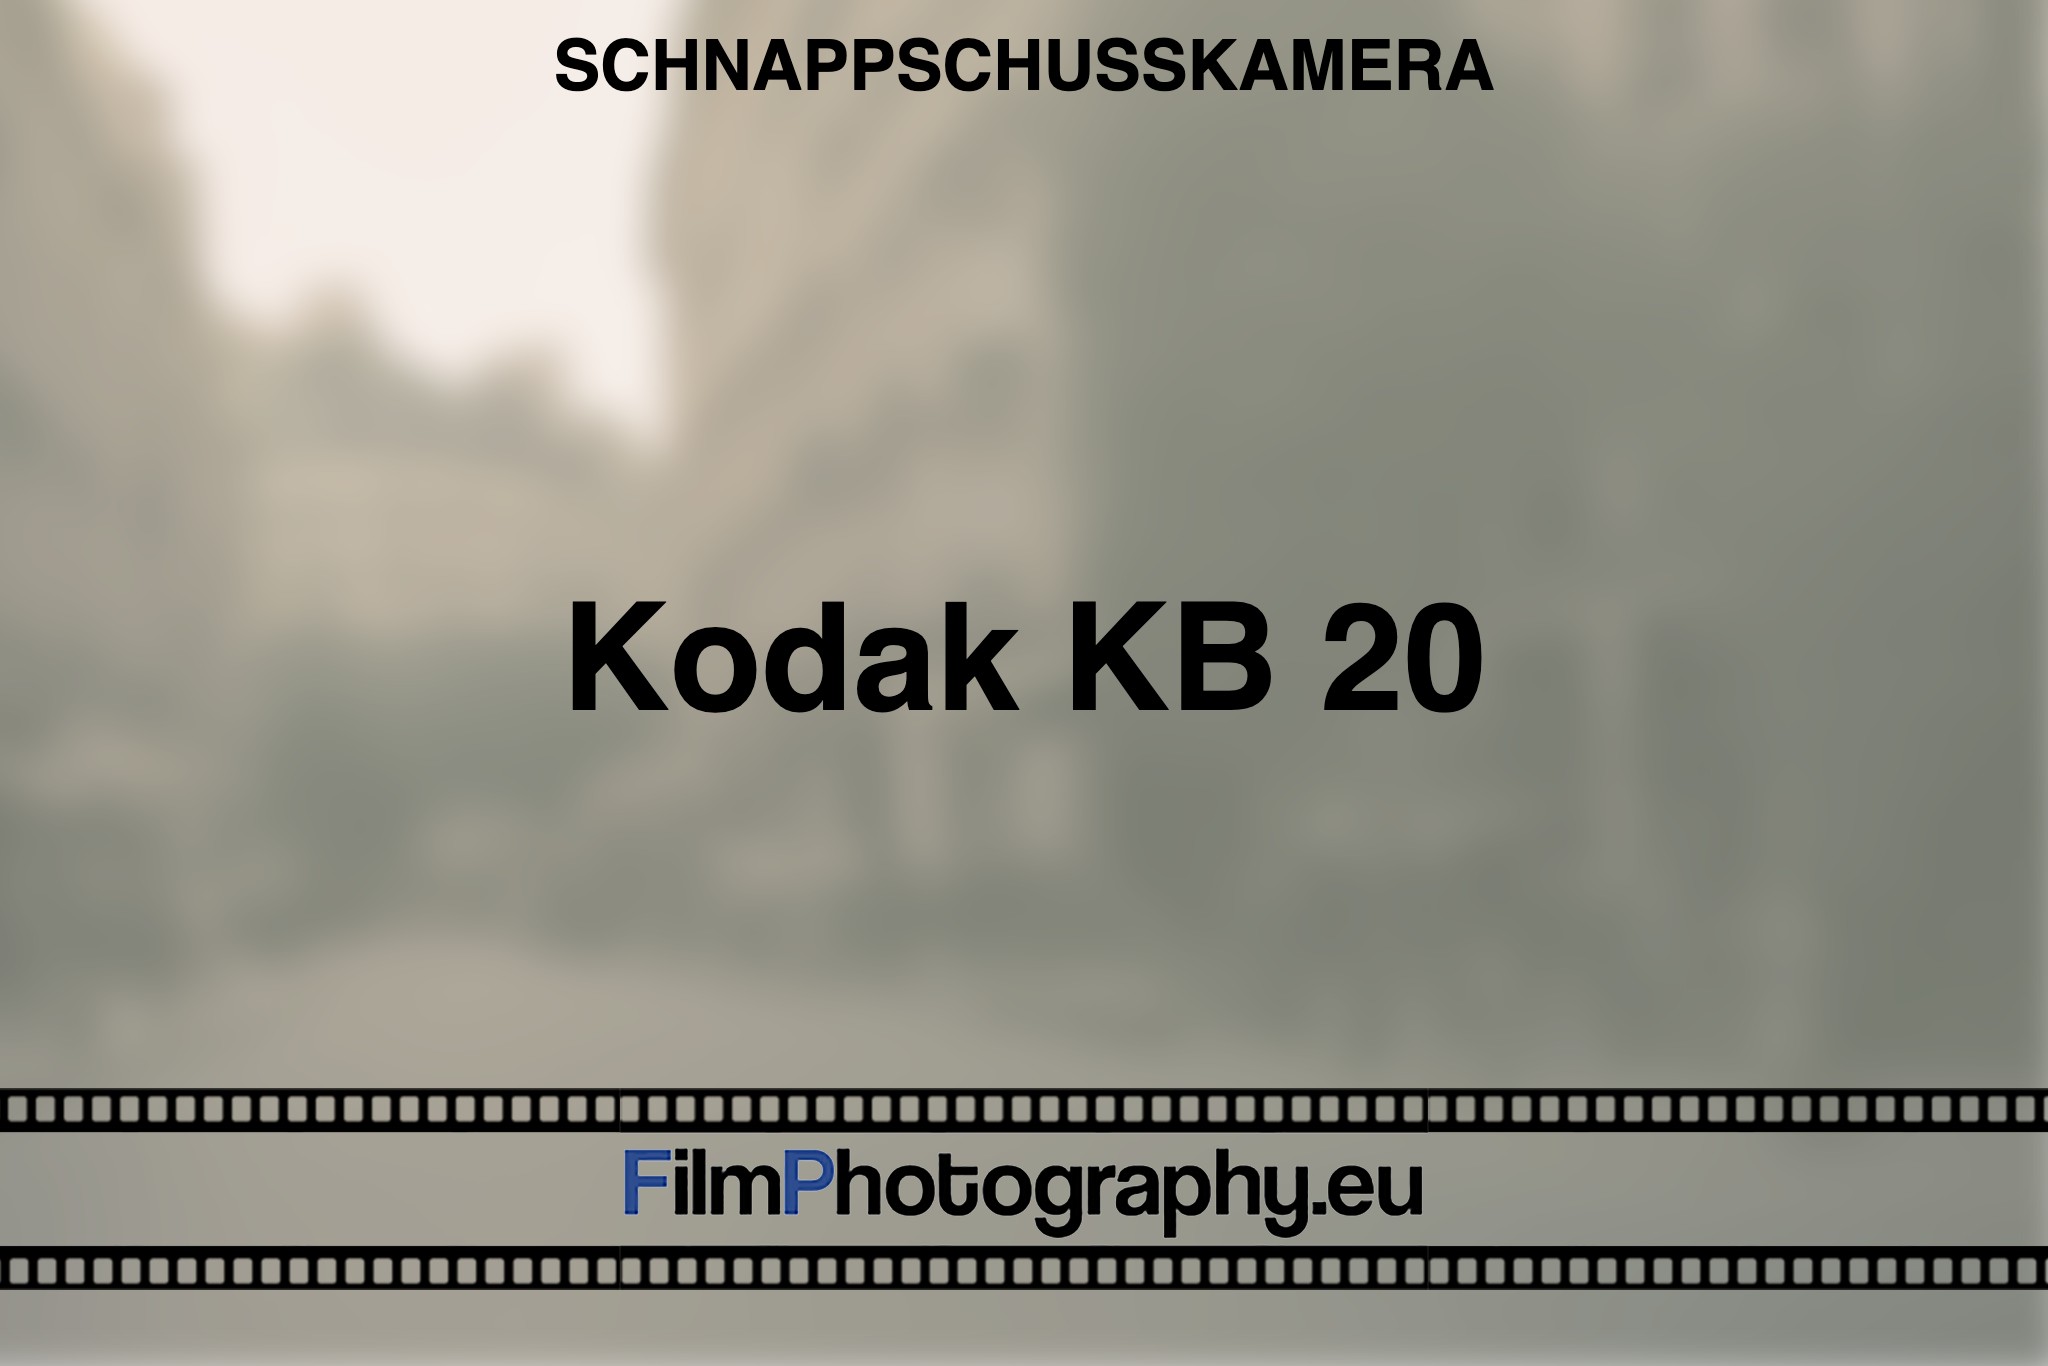 kodak-kb-20-schnappschusskamera-bnv